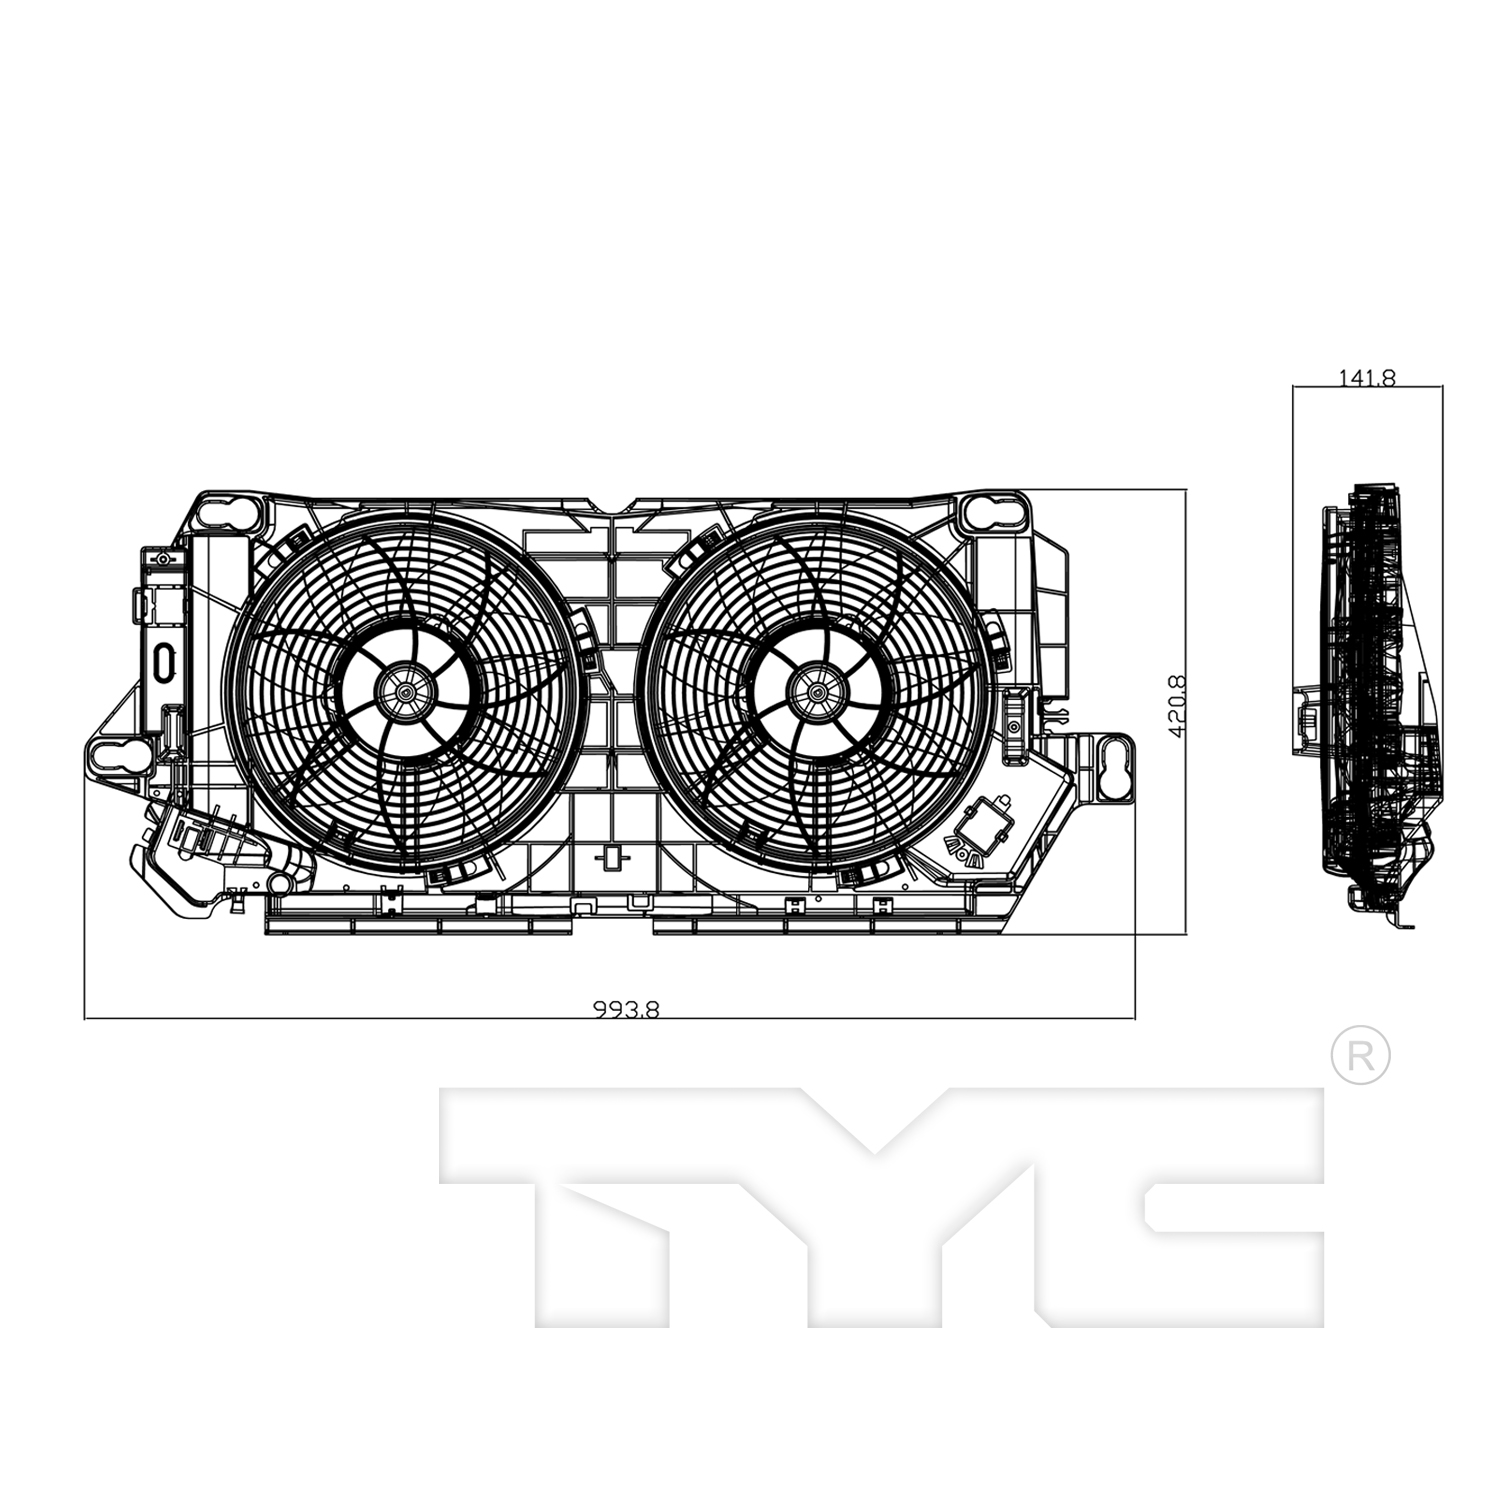 Aftermarket FAN ASSEMBLY/FAN SHROUDS for BMW - X3, X3,04-10,Radiator fan/motor assembly